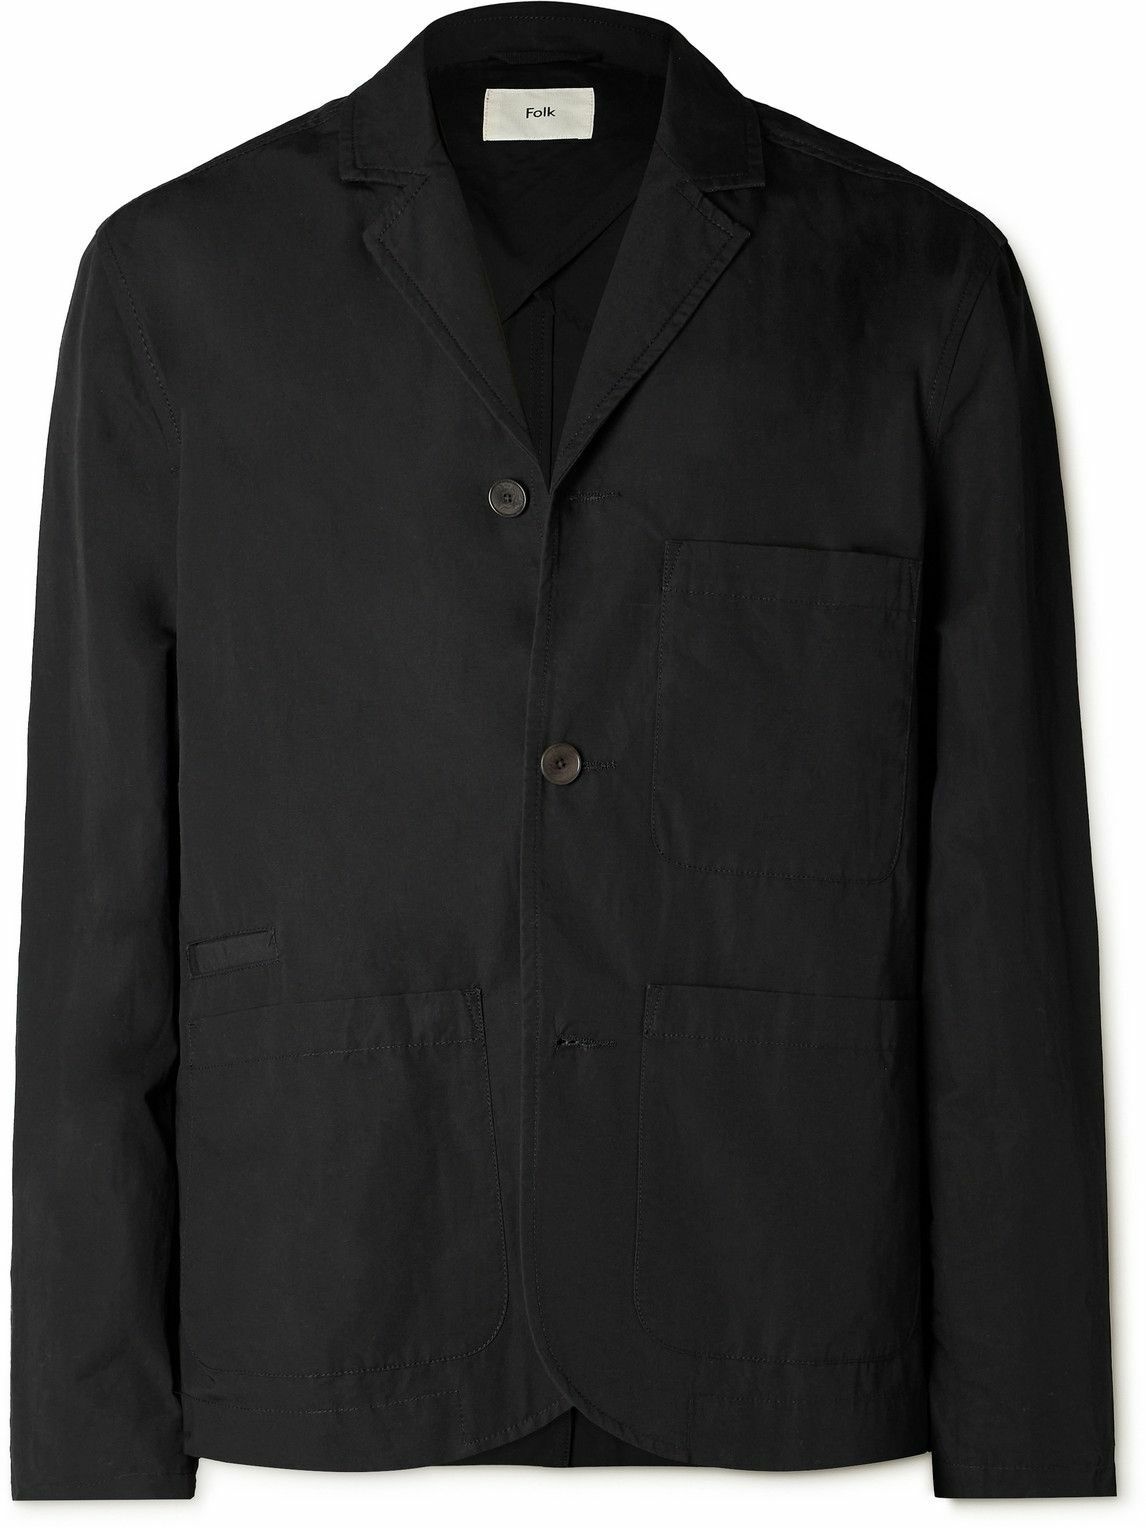 Photo: Folk - Unstructured Garment-Dyed Cotton Blazer - Black